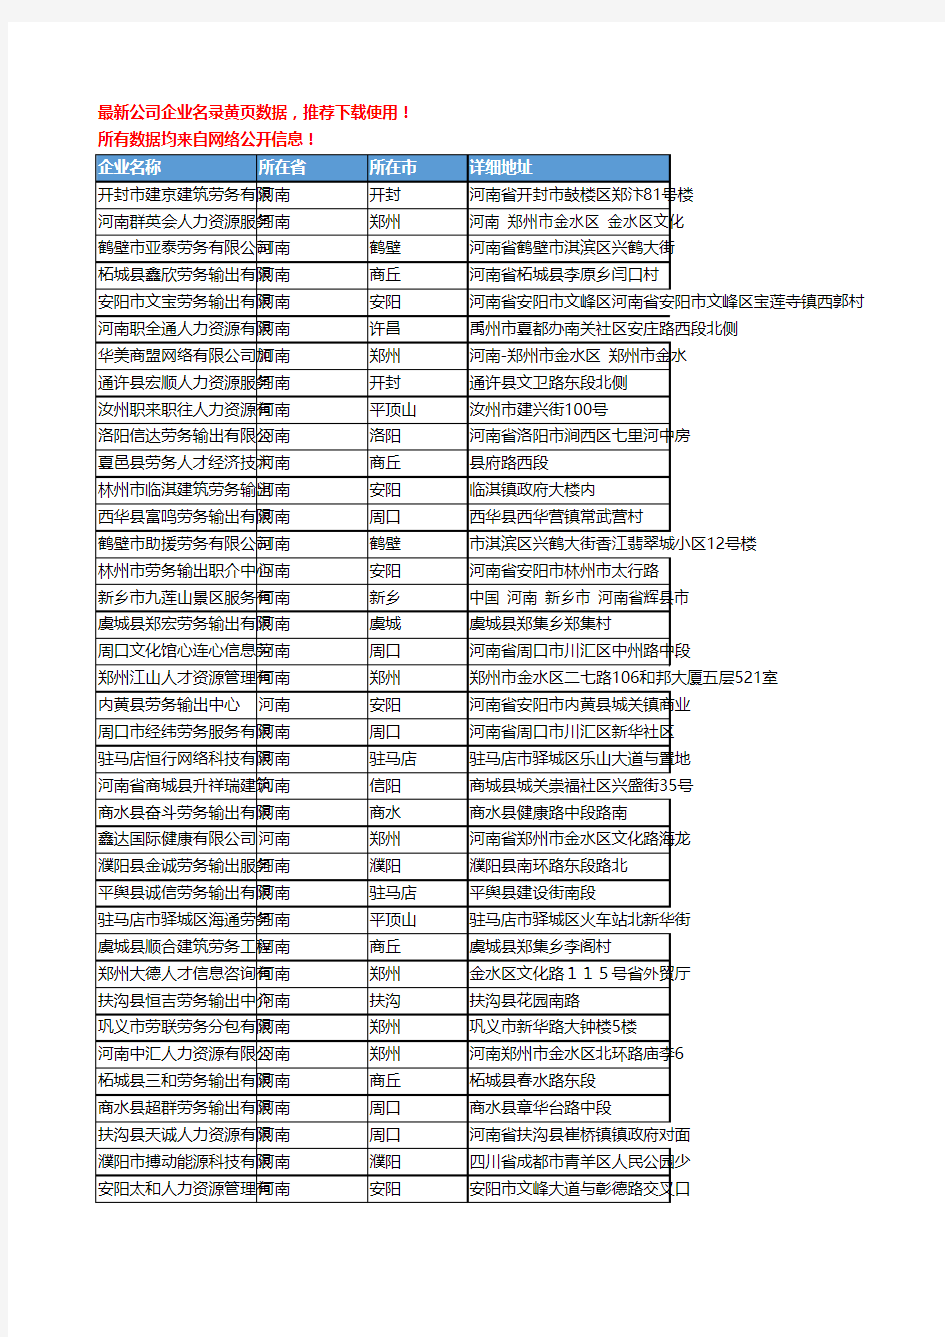 【优质数据】2019新版河南省人力资源服务工商企业名录黄页大全379家